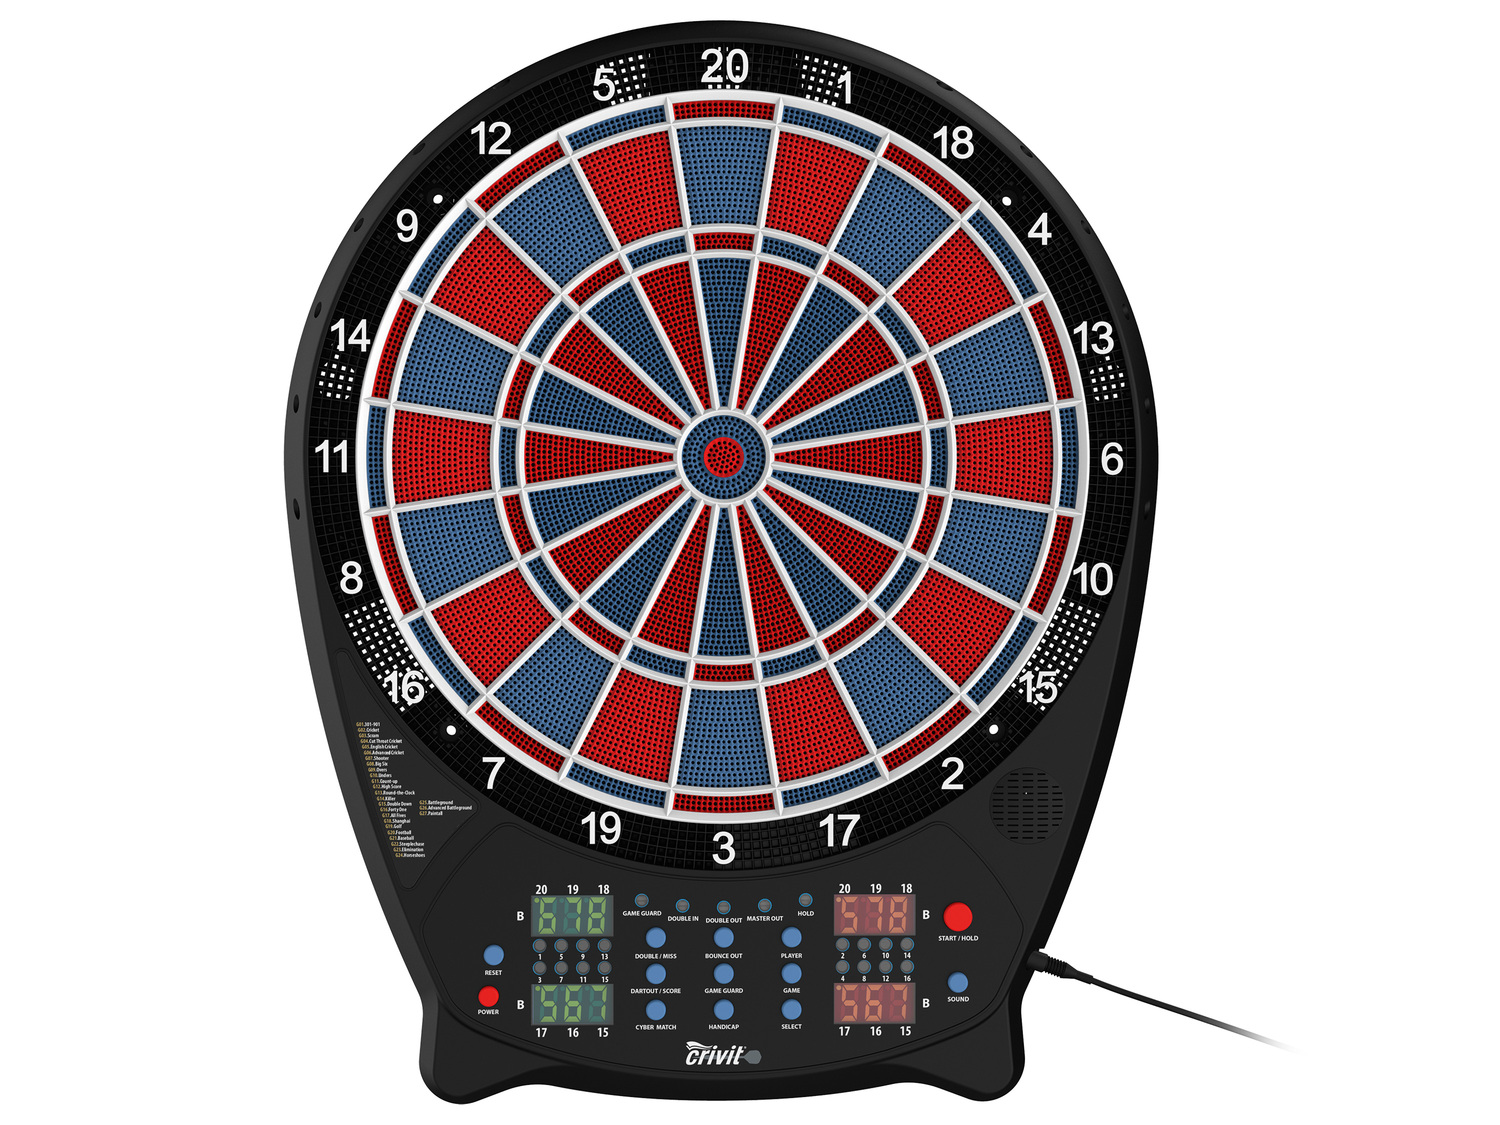 Elektroniczna gra w darta Crivit, cena 99,00 PLN 
- 27 gier z ponad 500 wariantami
- ...